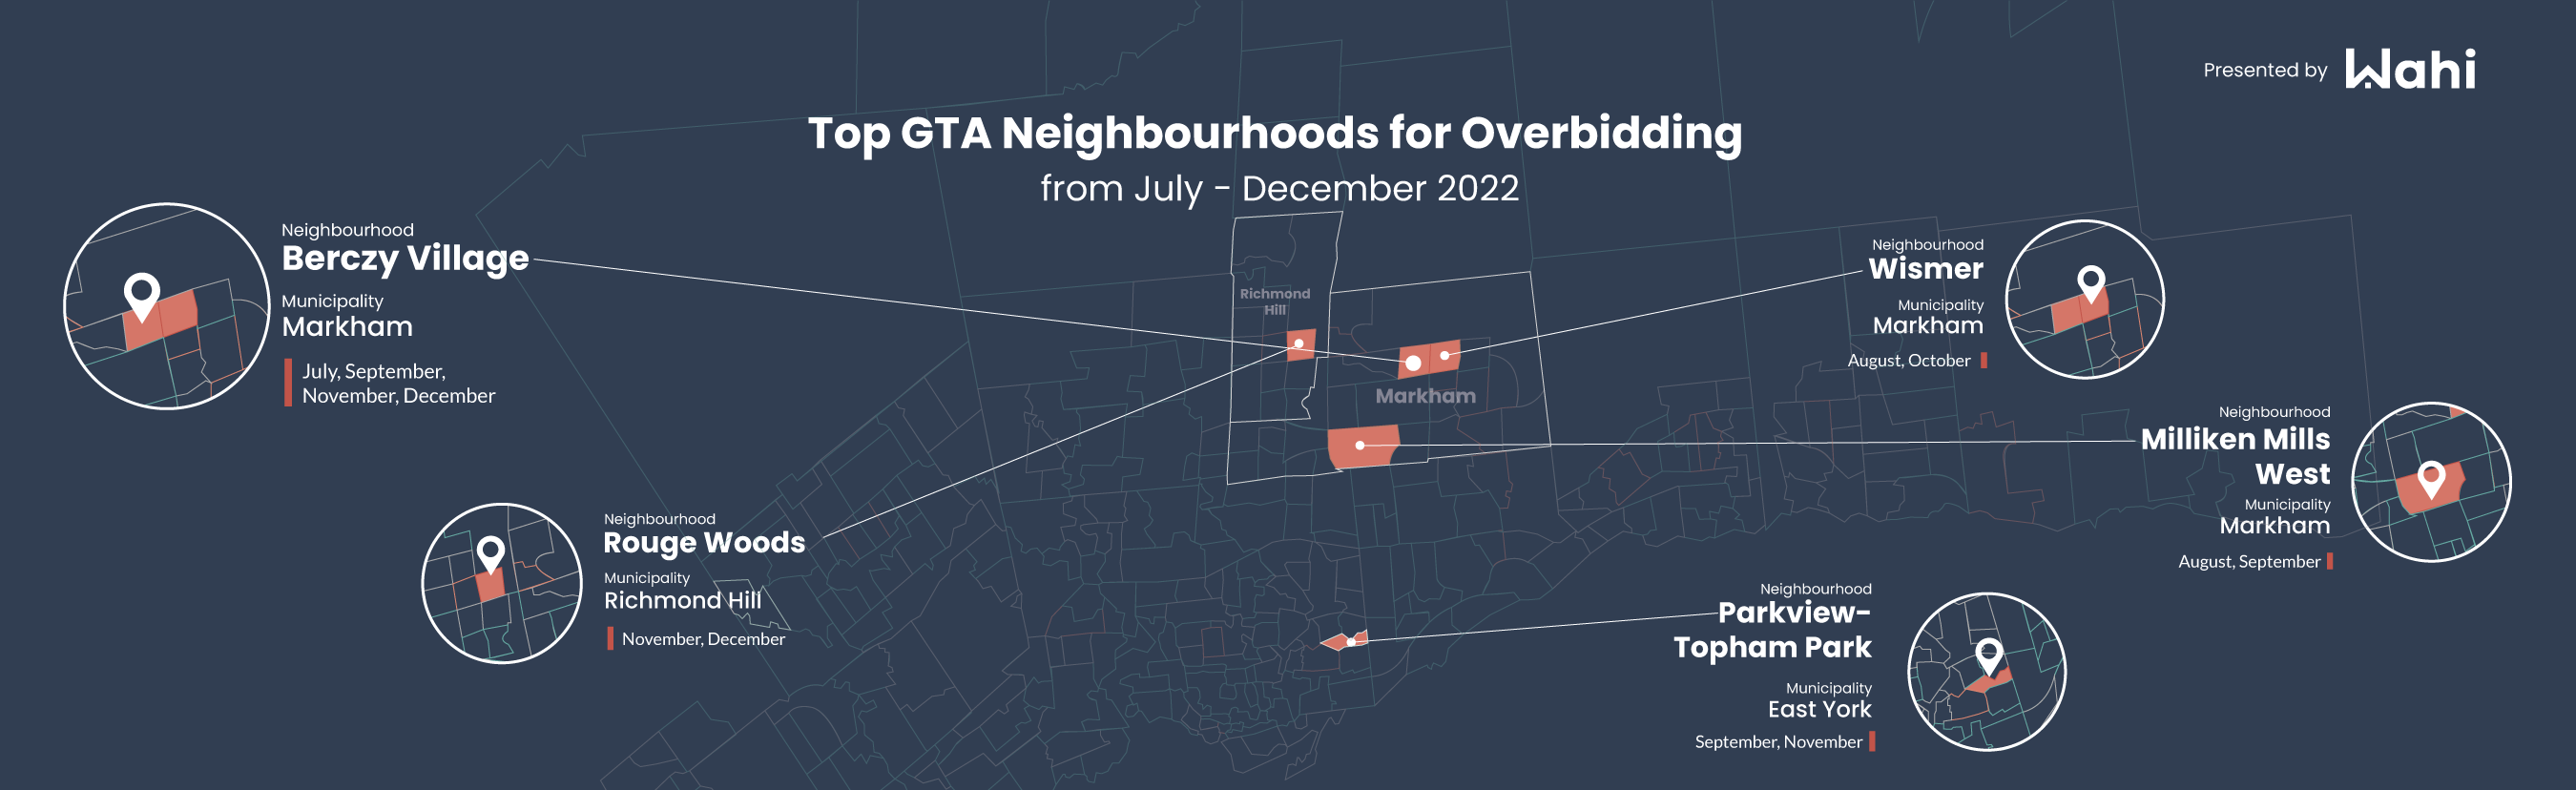 top 5 GTA neighbourhoods for overbidding in December 2022